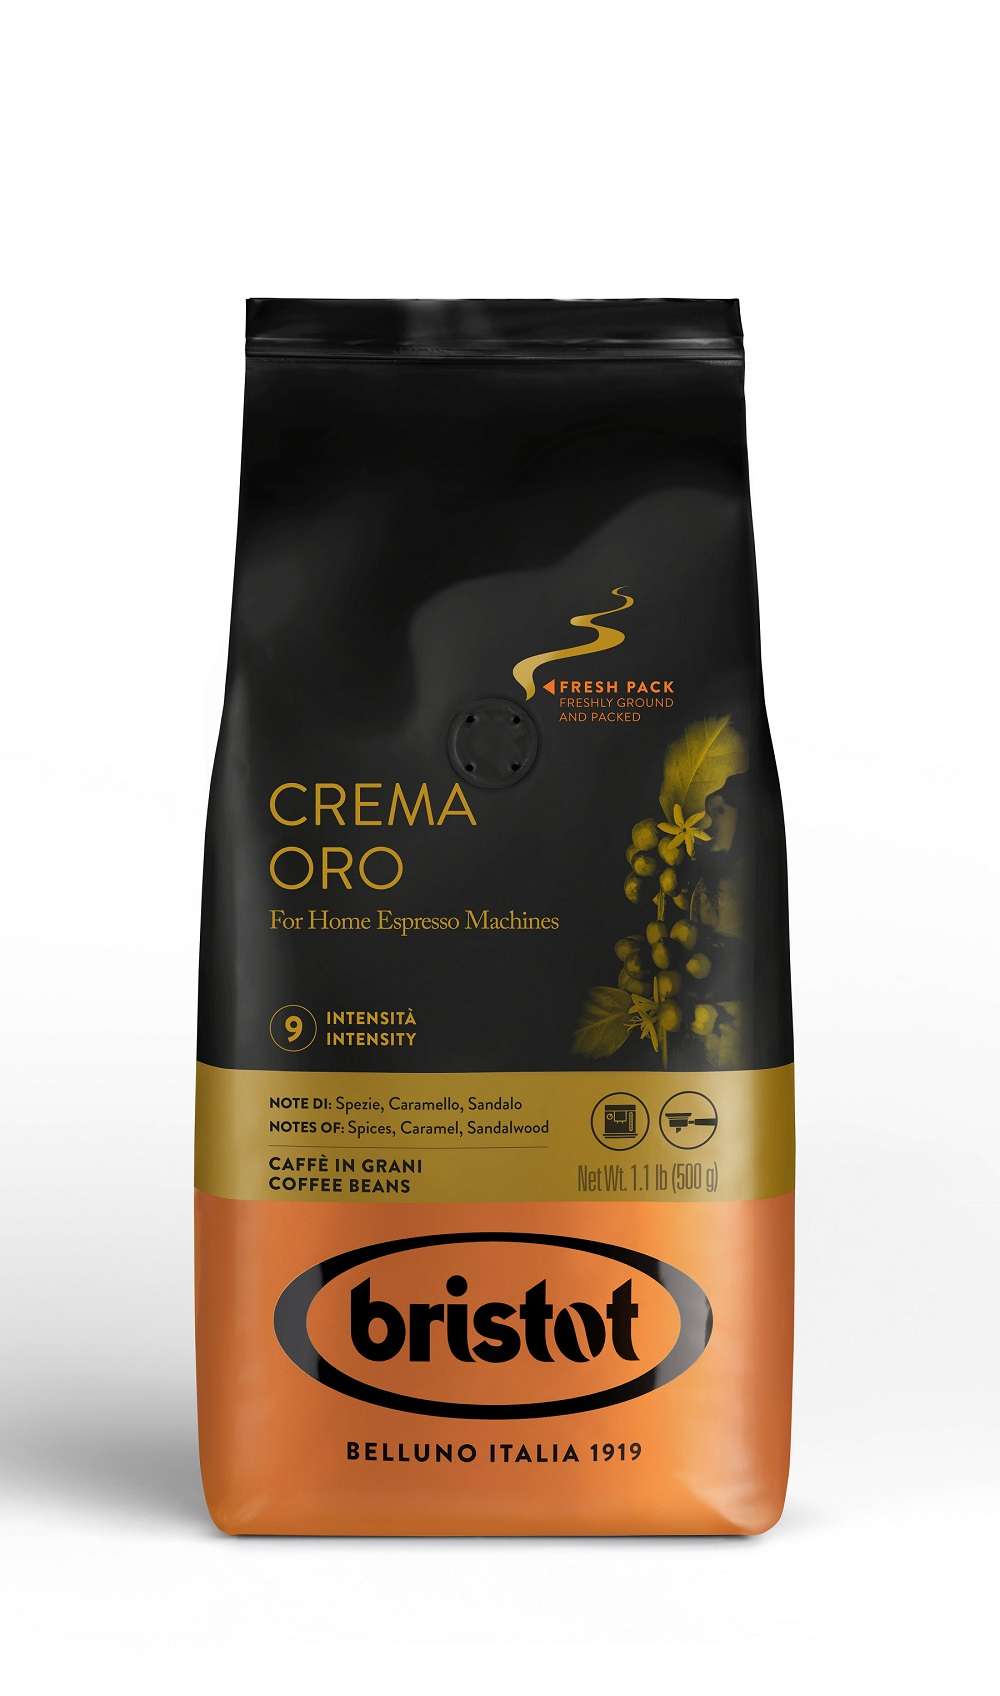 Bristot Crema Oro 500g Kaffee ganze Bohnen